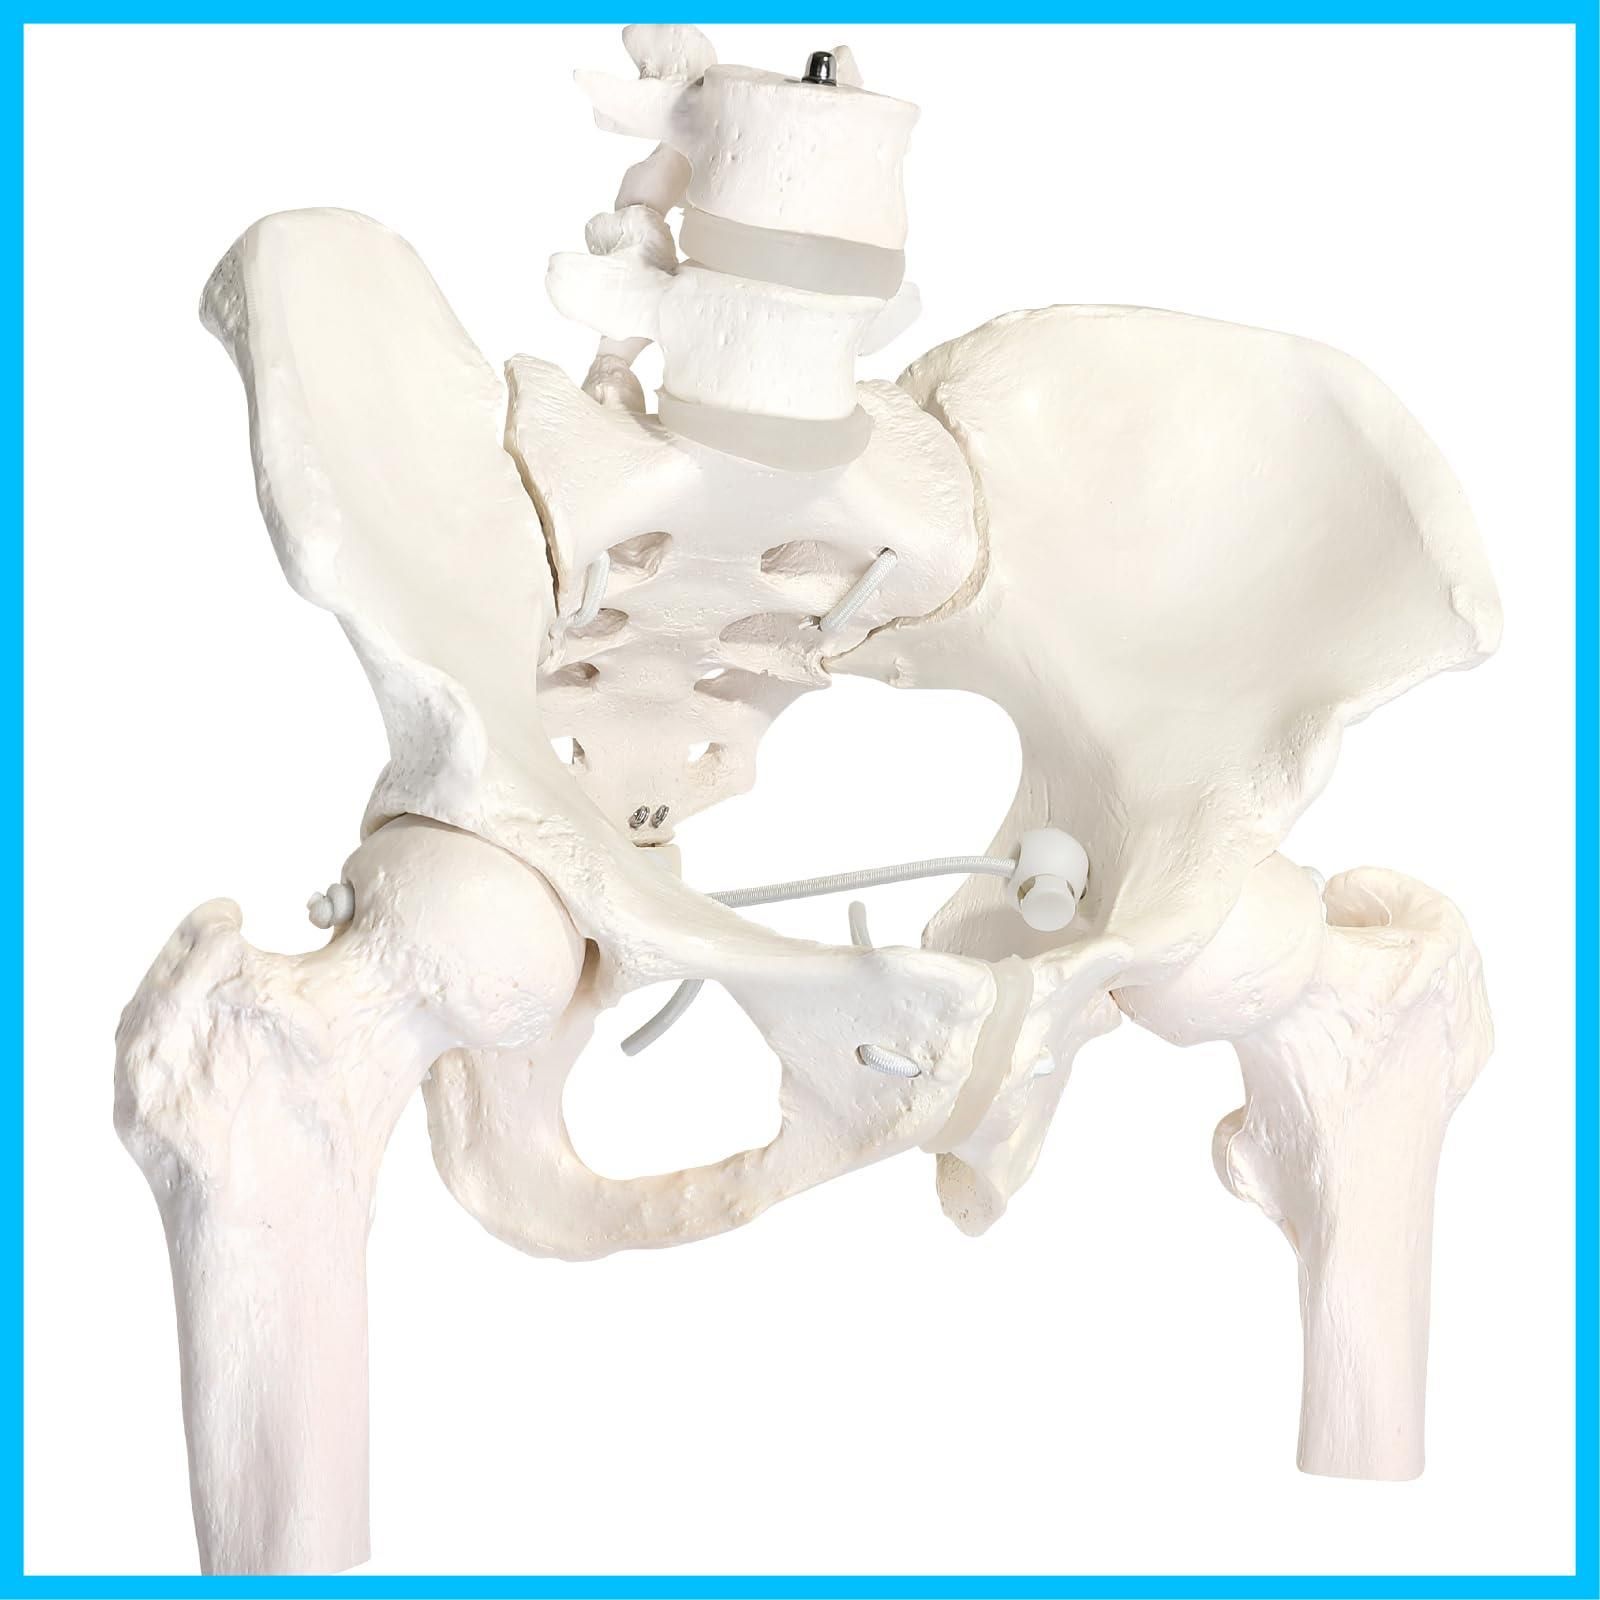 迅速発送】KIYOMARU グイッと動かせる大腿骨付き骨盤模型 人体模型 骨 